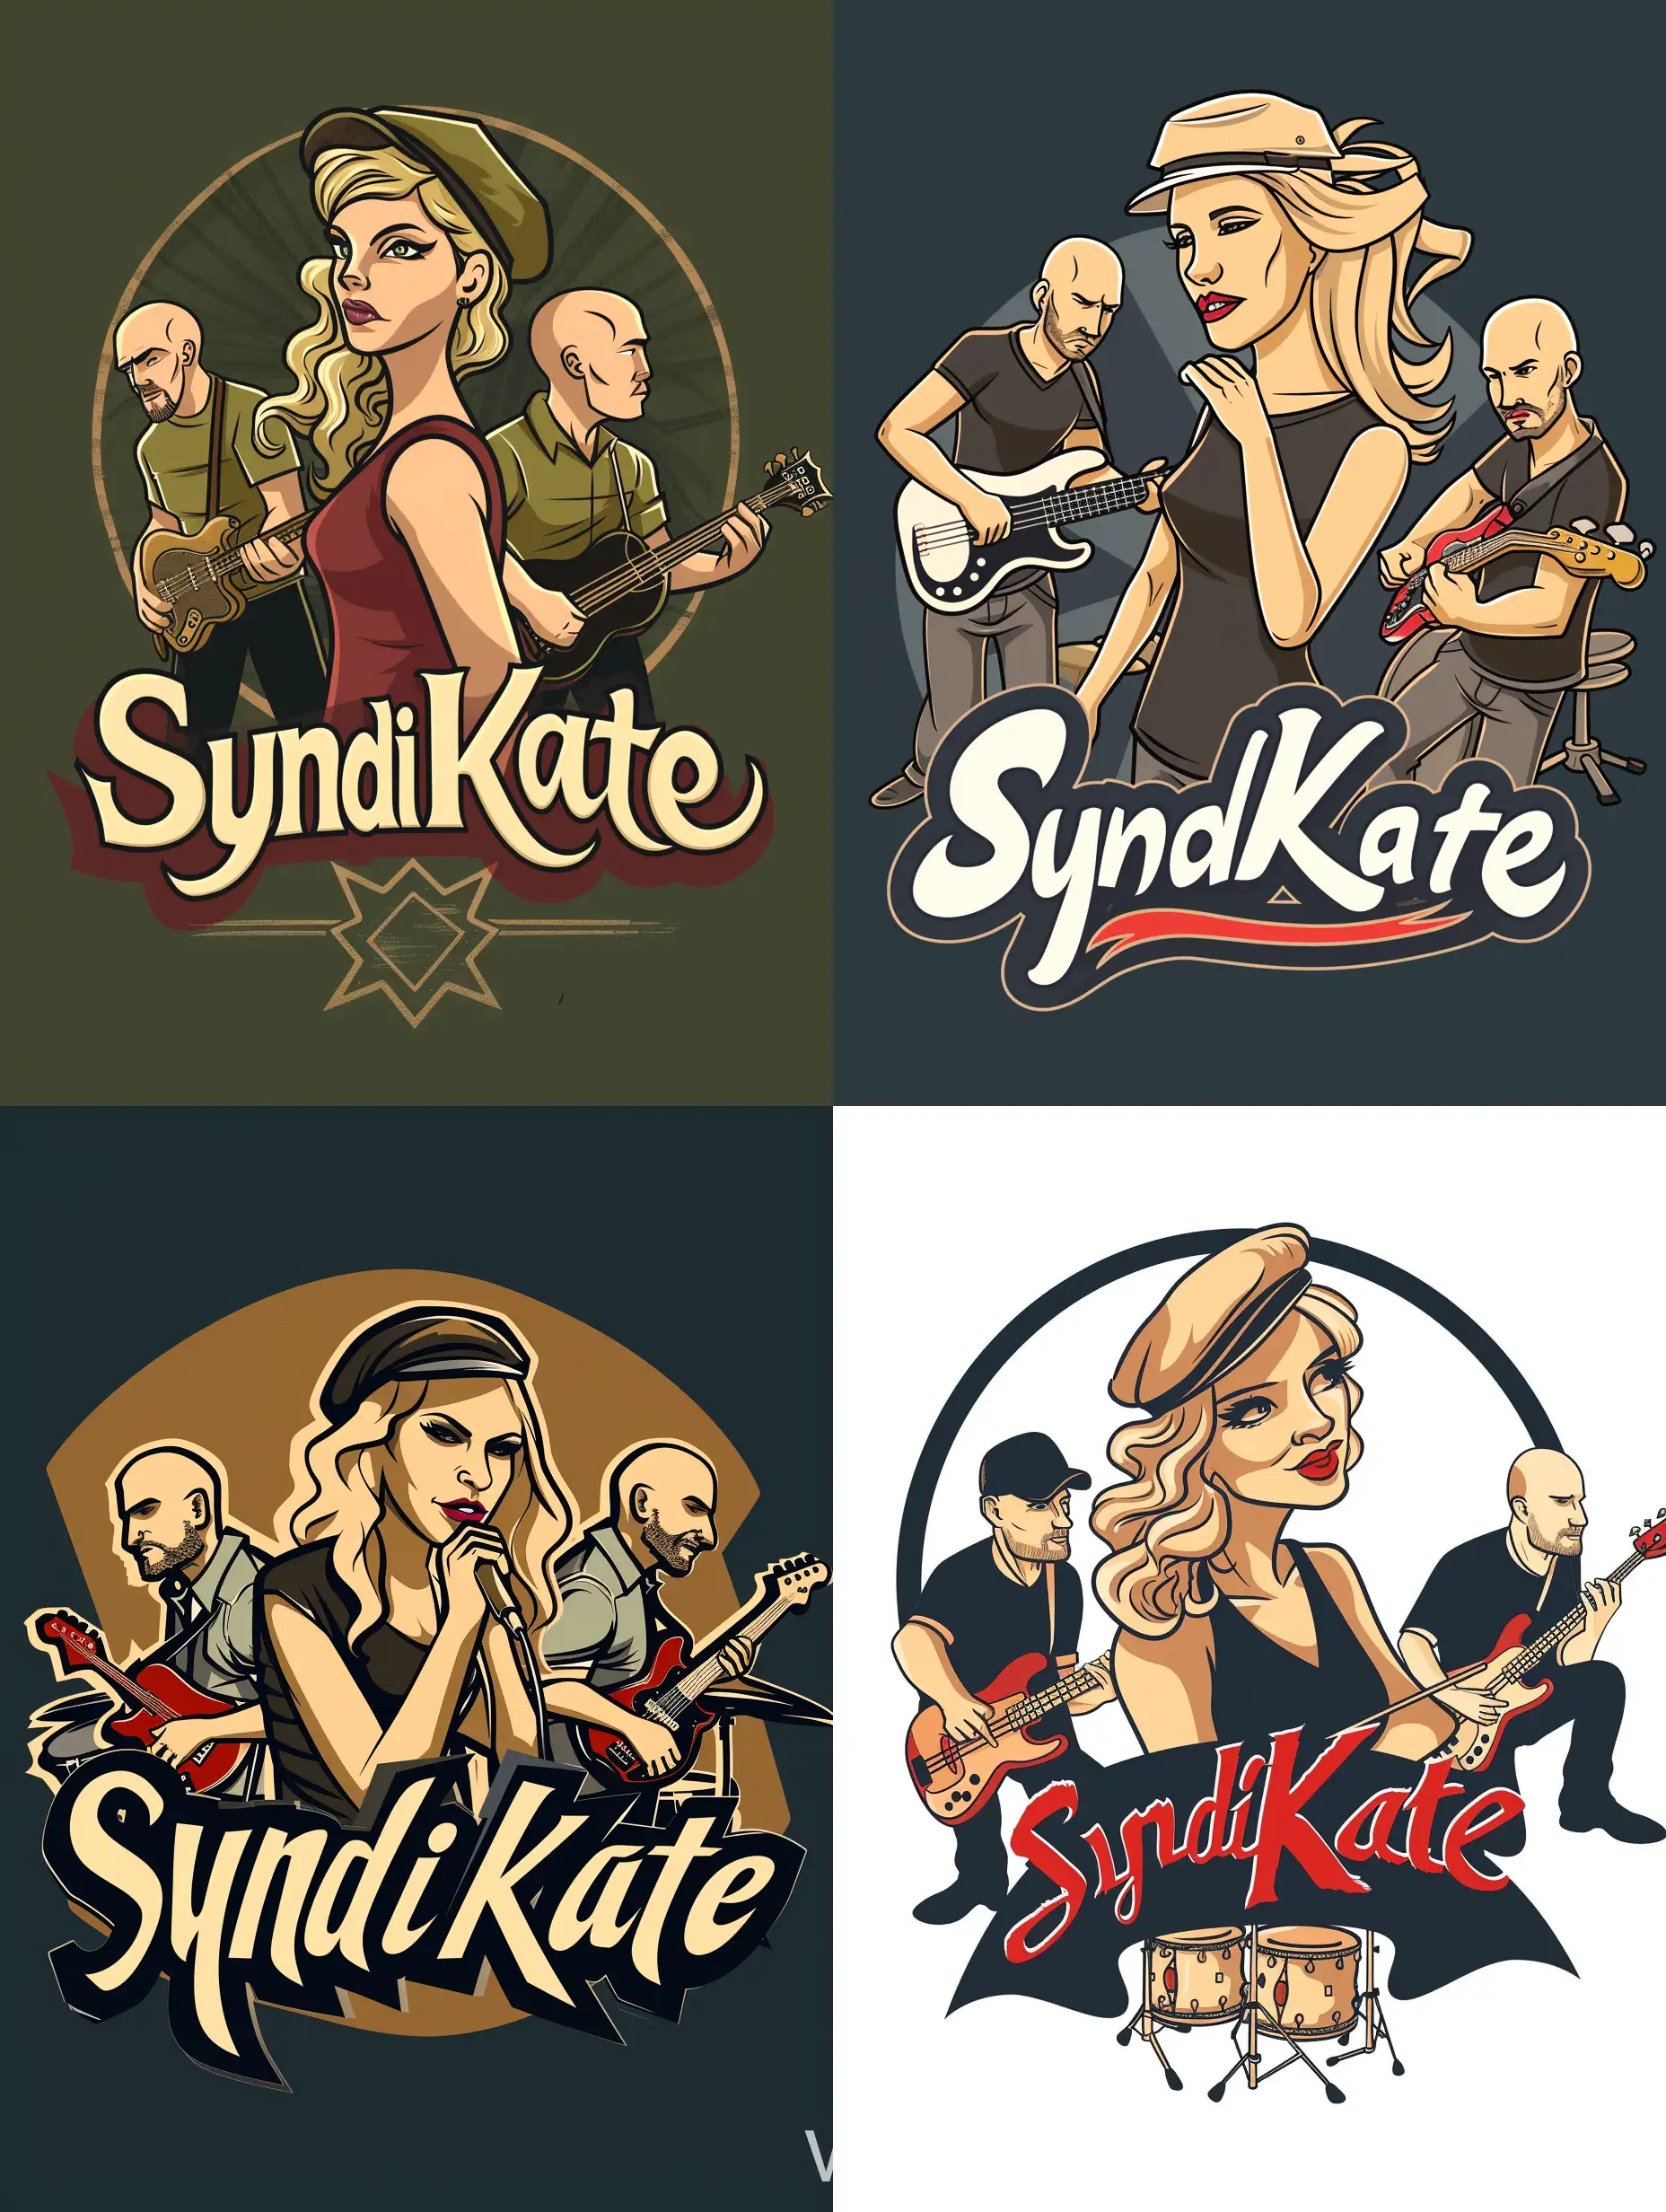 Логотип для музыкальной группы “SyndiKate”, где главное лицо светловолосая певица Kate, вокруг которой играют трое мужчин-музыкантов: лысый барабанщик, бас-гитарист в кепке, лысый соло-гитарист.